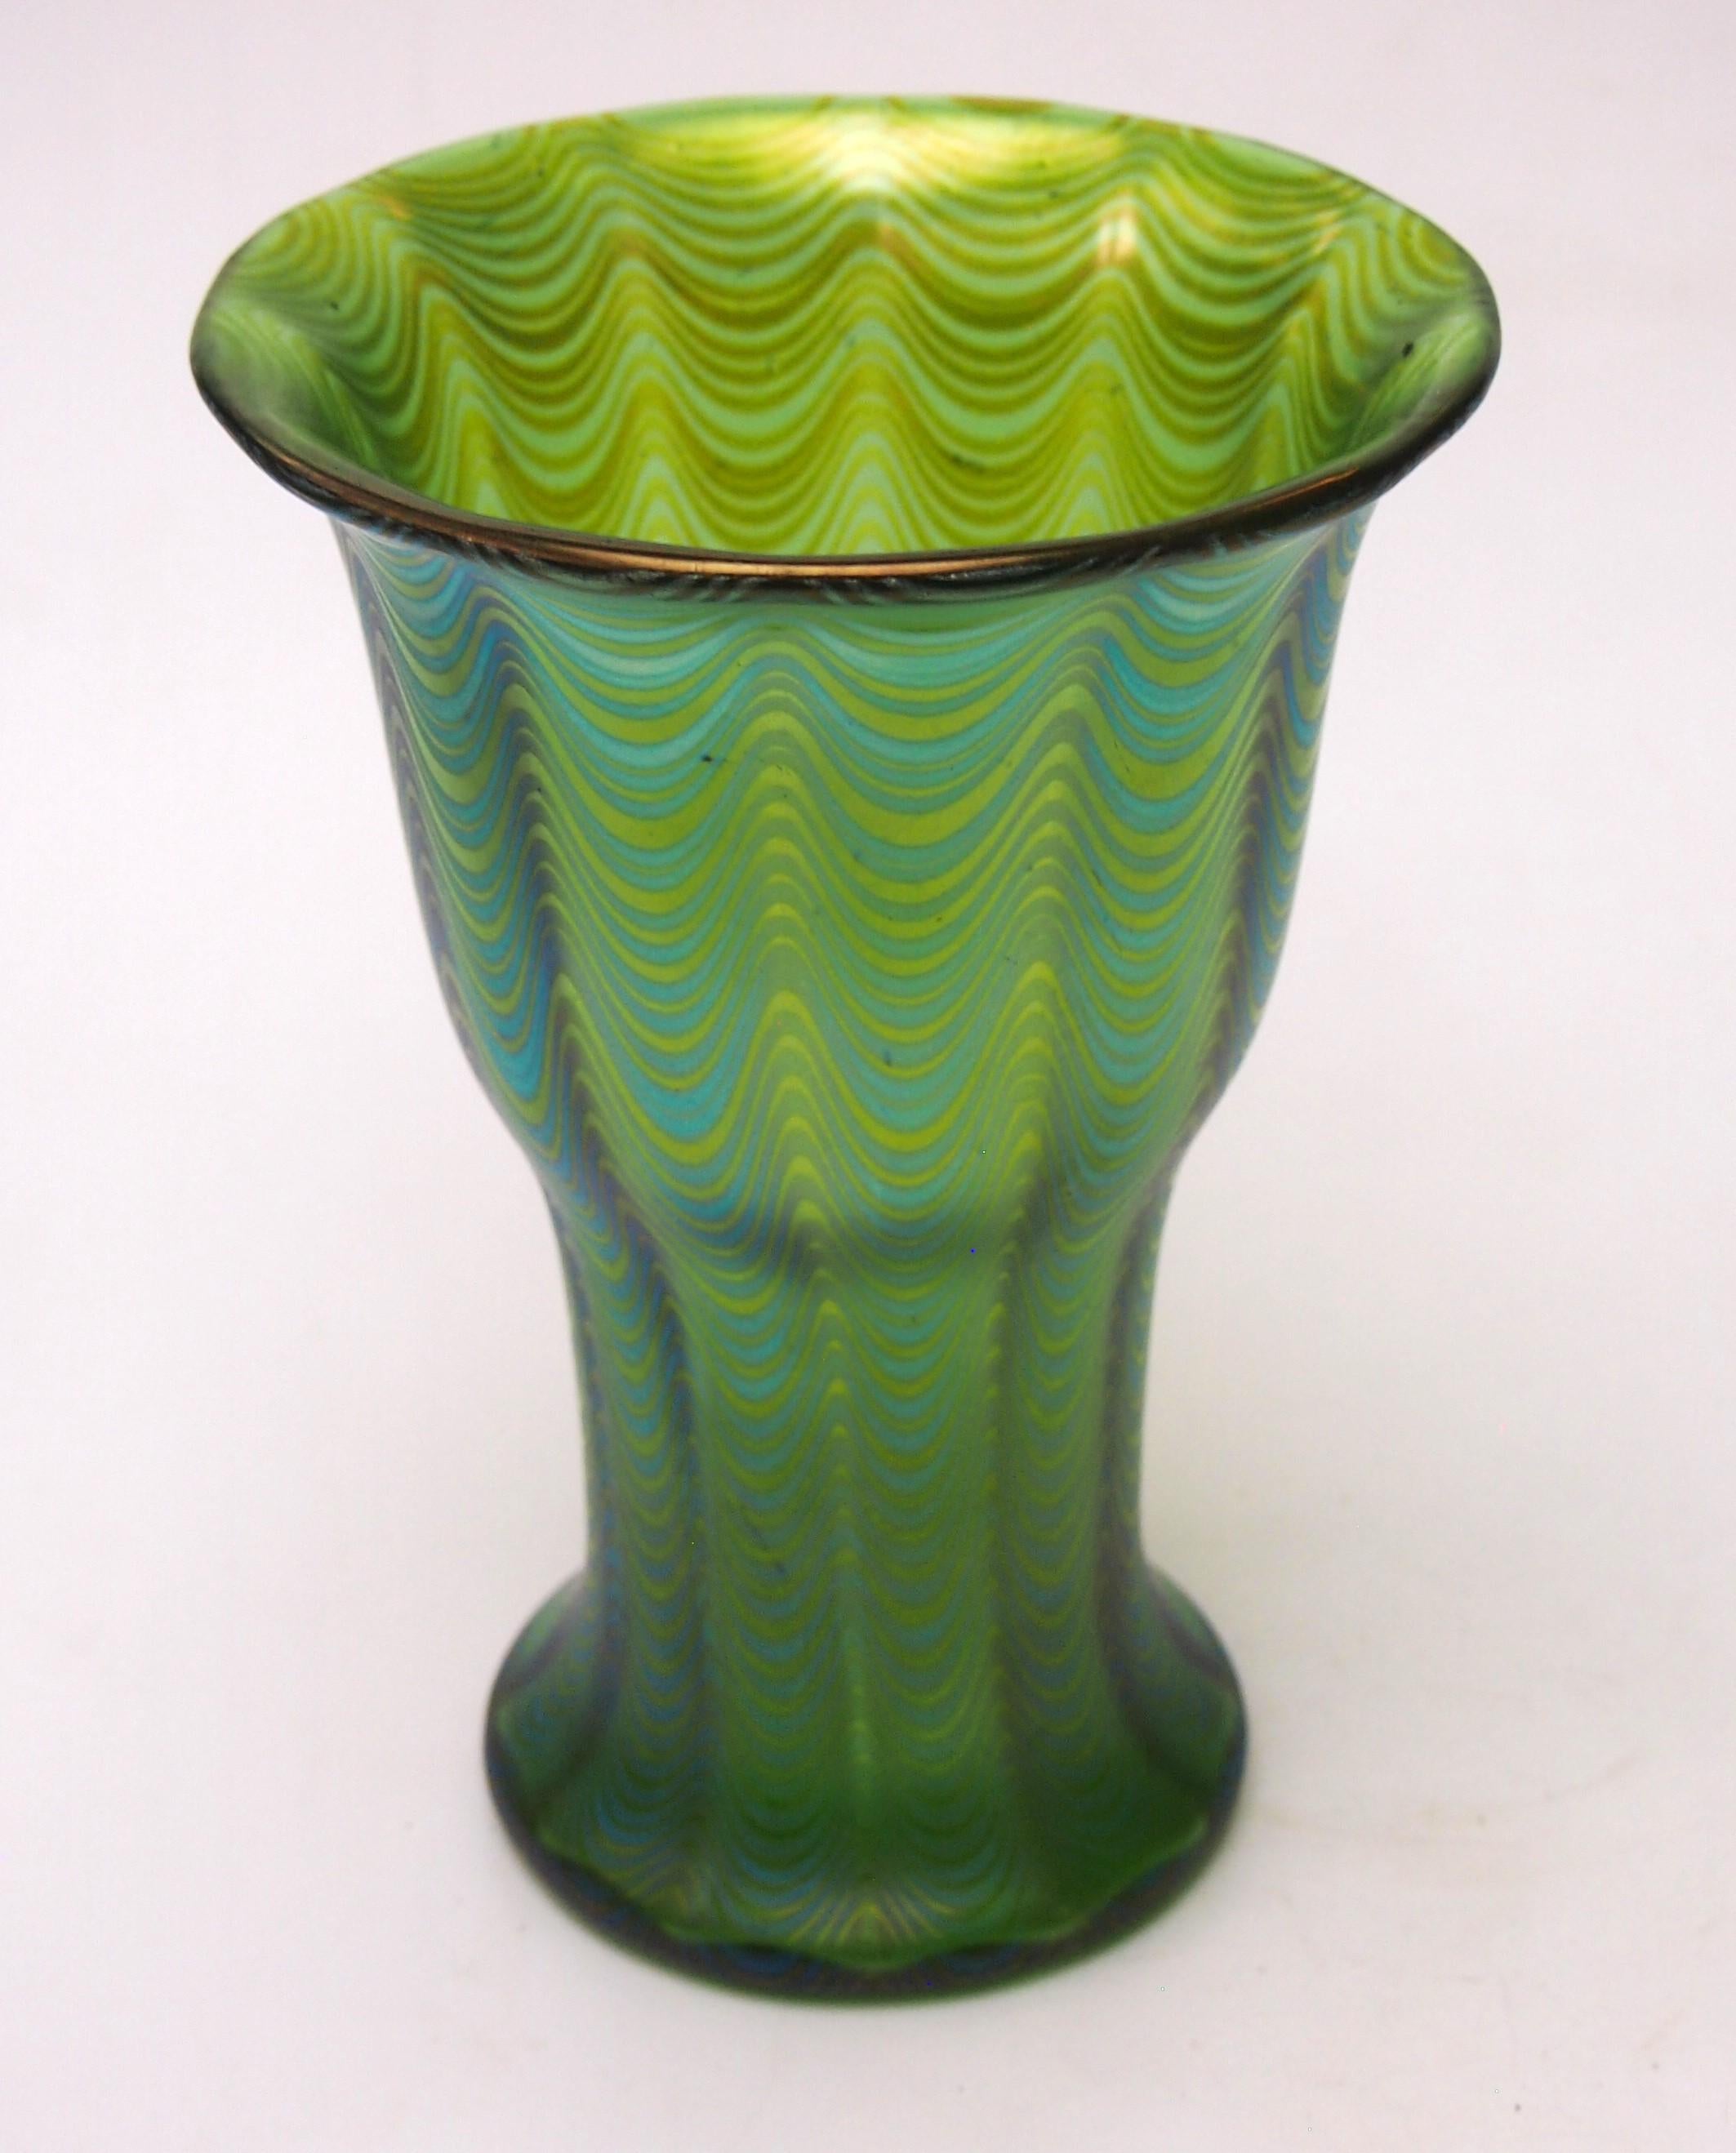 Czech Rare and Important Loetz Phaenomen Vase Crete PG 6893 made 11898 For Sale